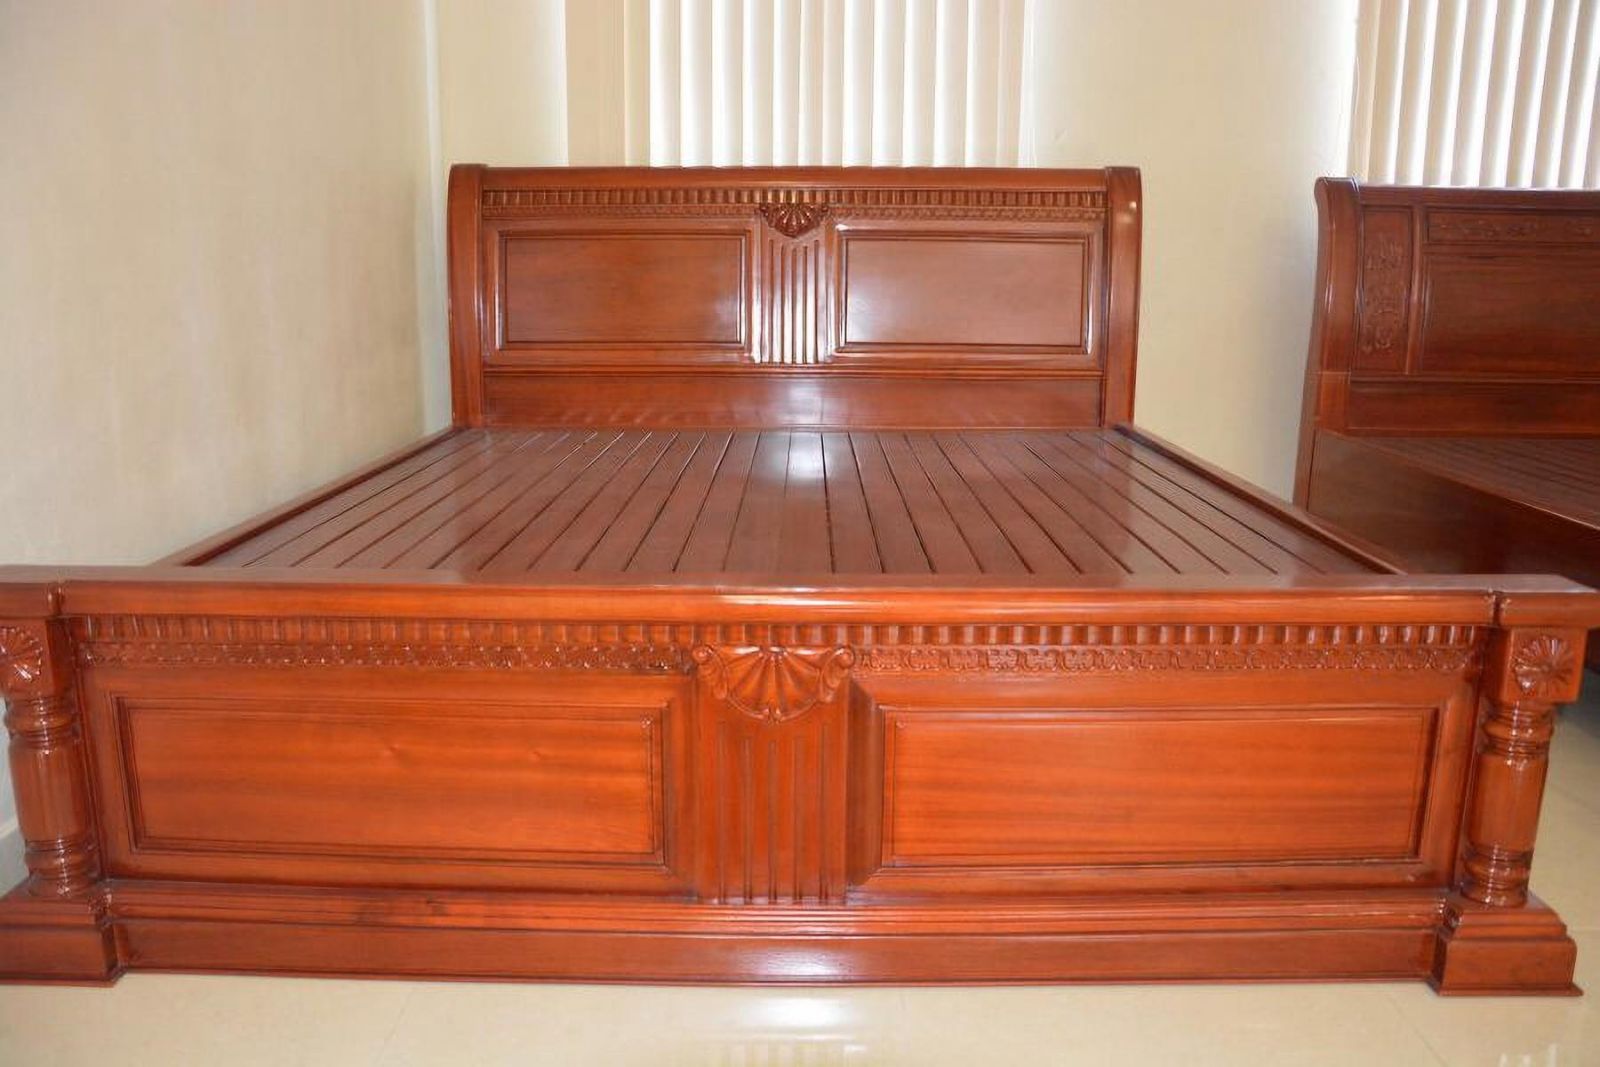 Giường ngủ gỗ Gụ cao cấp 2024: Với giường ngủ gỗ Gụ cao cấp 2024, bạn sẽ không chỉ có một nơi nghỉ ngơi tuyệt vời mà còn là một tác phẩm nghệ thuật vô cùng đẹp mắt. Với chất liệu gỗ cao cấp, đường nét tinh tế và âm thanh êm dịu, việc tận hưởng giấc ngủ tuyệt đỉnh chưa bao giờ dễ dàng đến thế.